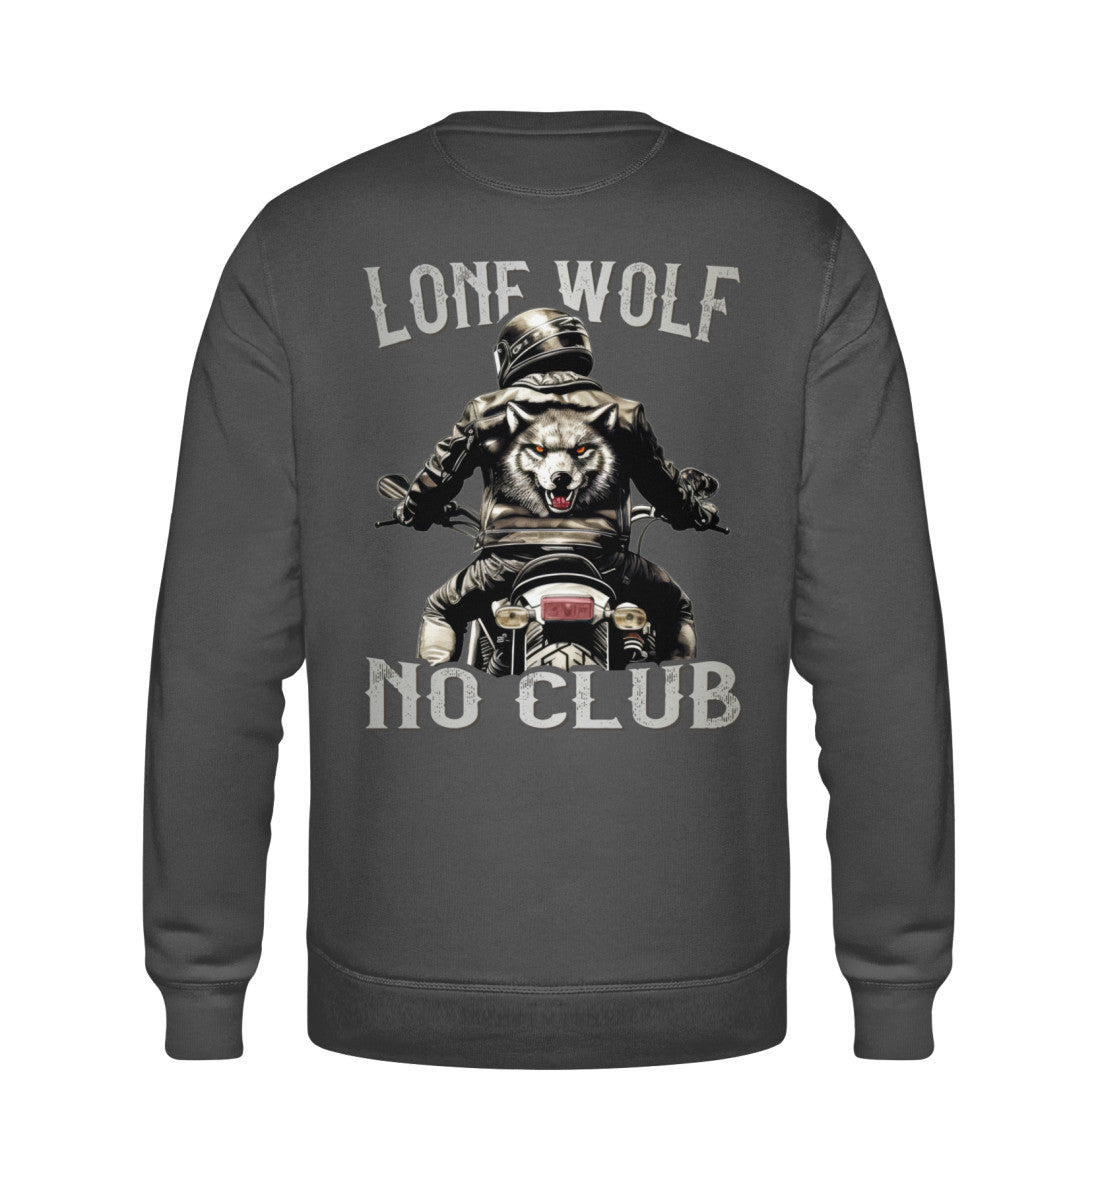 Ein Biker Sweatshirt für Motorradfahrer von Wingbikers mit dem Aufdruck, Lone Wolf - No Club, als Back Print, in dunkelgrau.